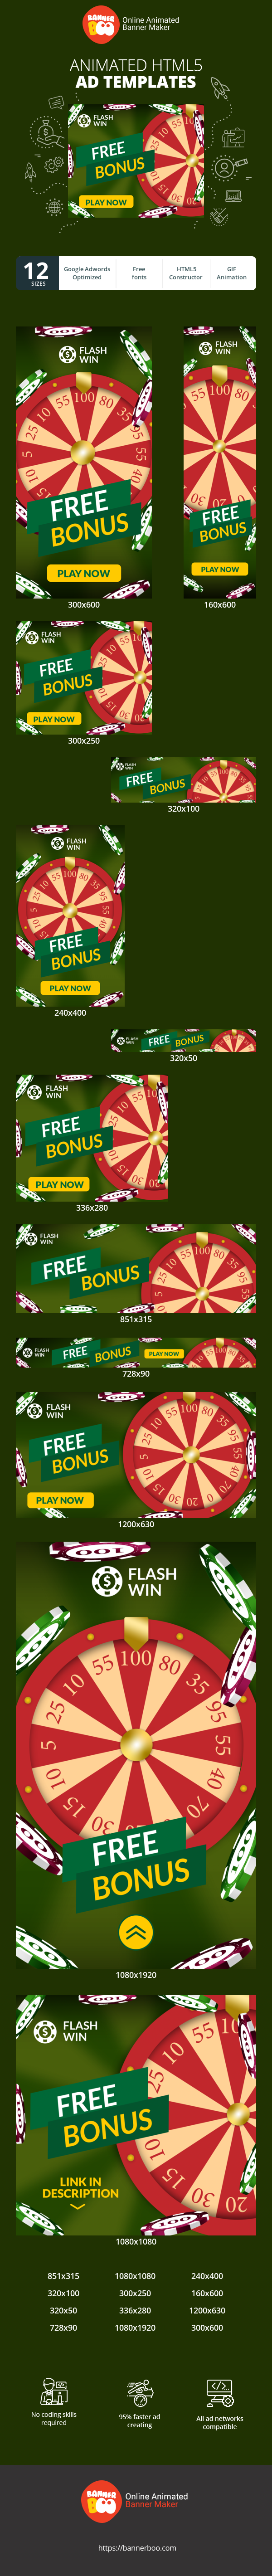 Banner ad template — Free Bonus — Gambling